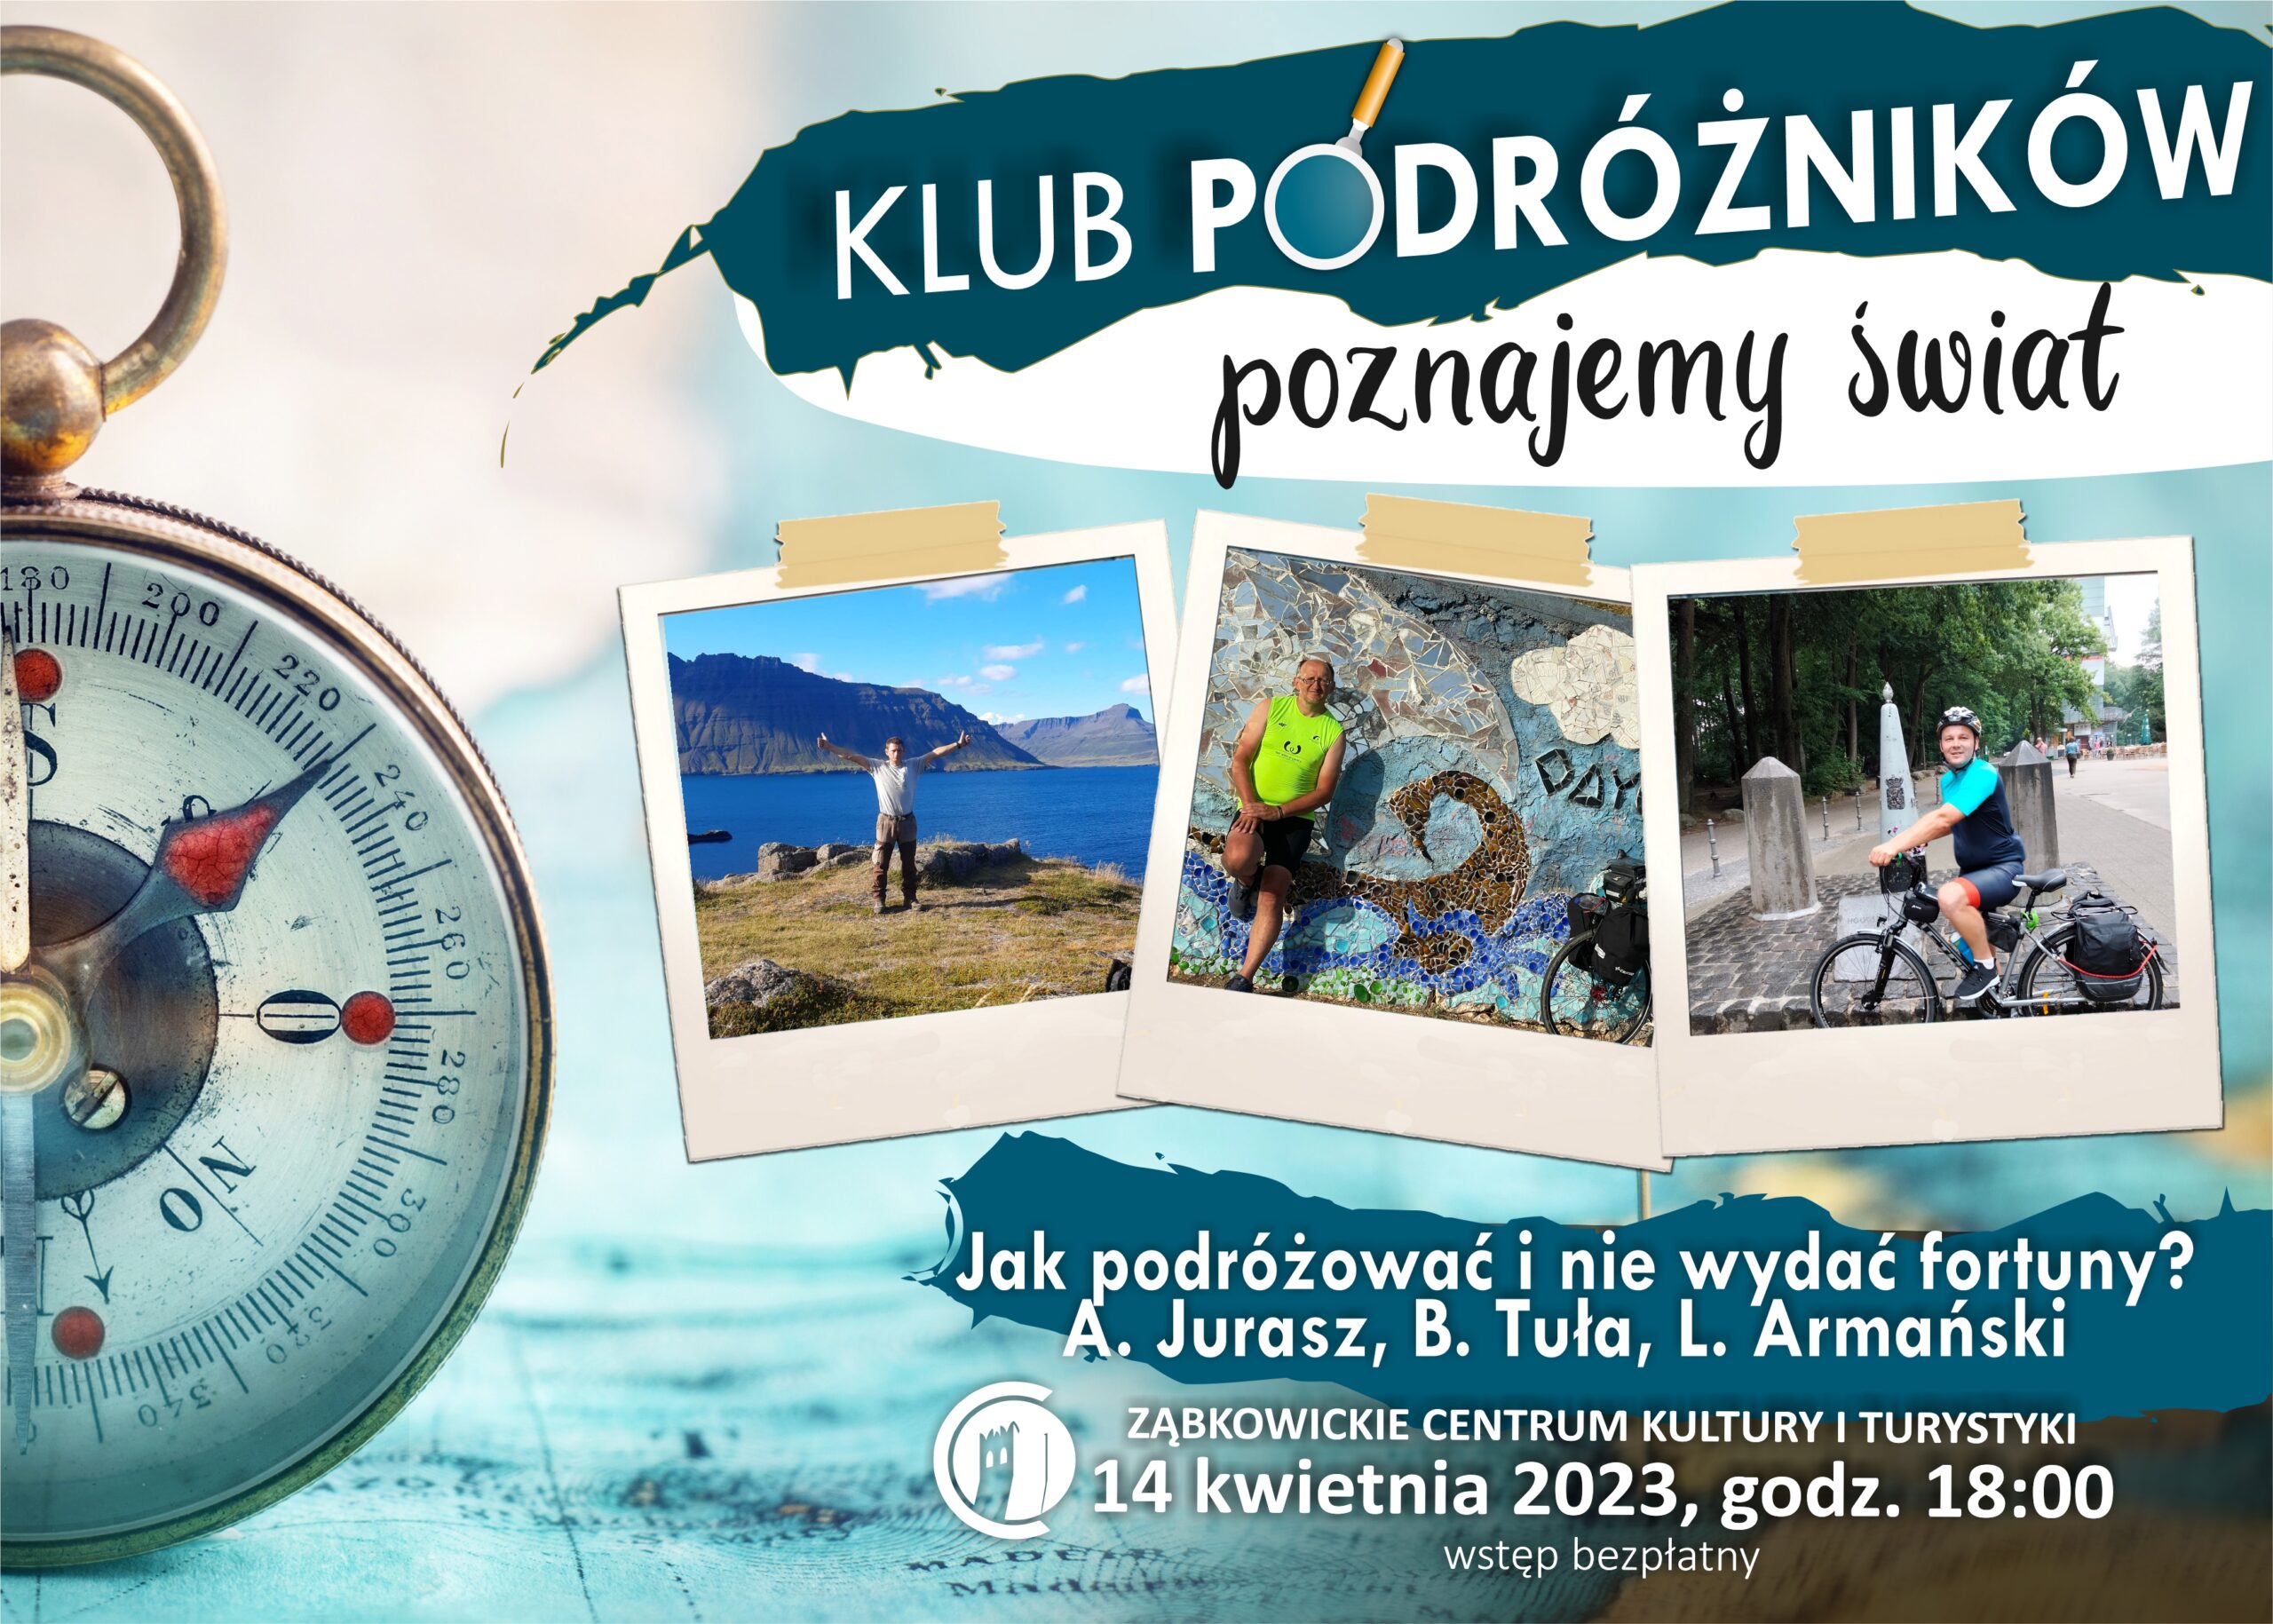 Plakat informujący o spotkaniu klubu podróżników 14 kwietnia 2023 o godzinie 18:00 w Ząbkowickim Centrum Kultury i Turystyki.